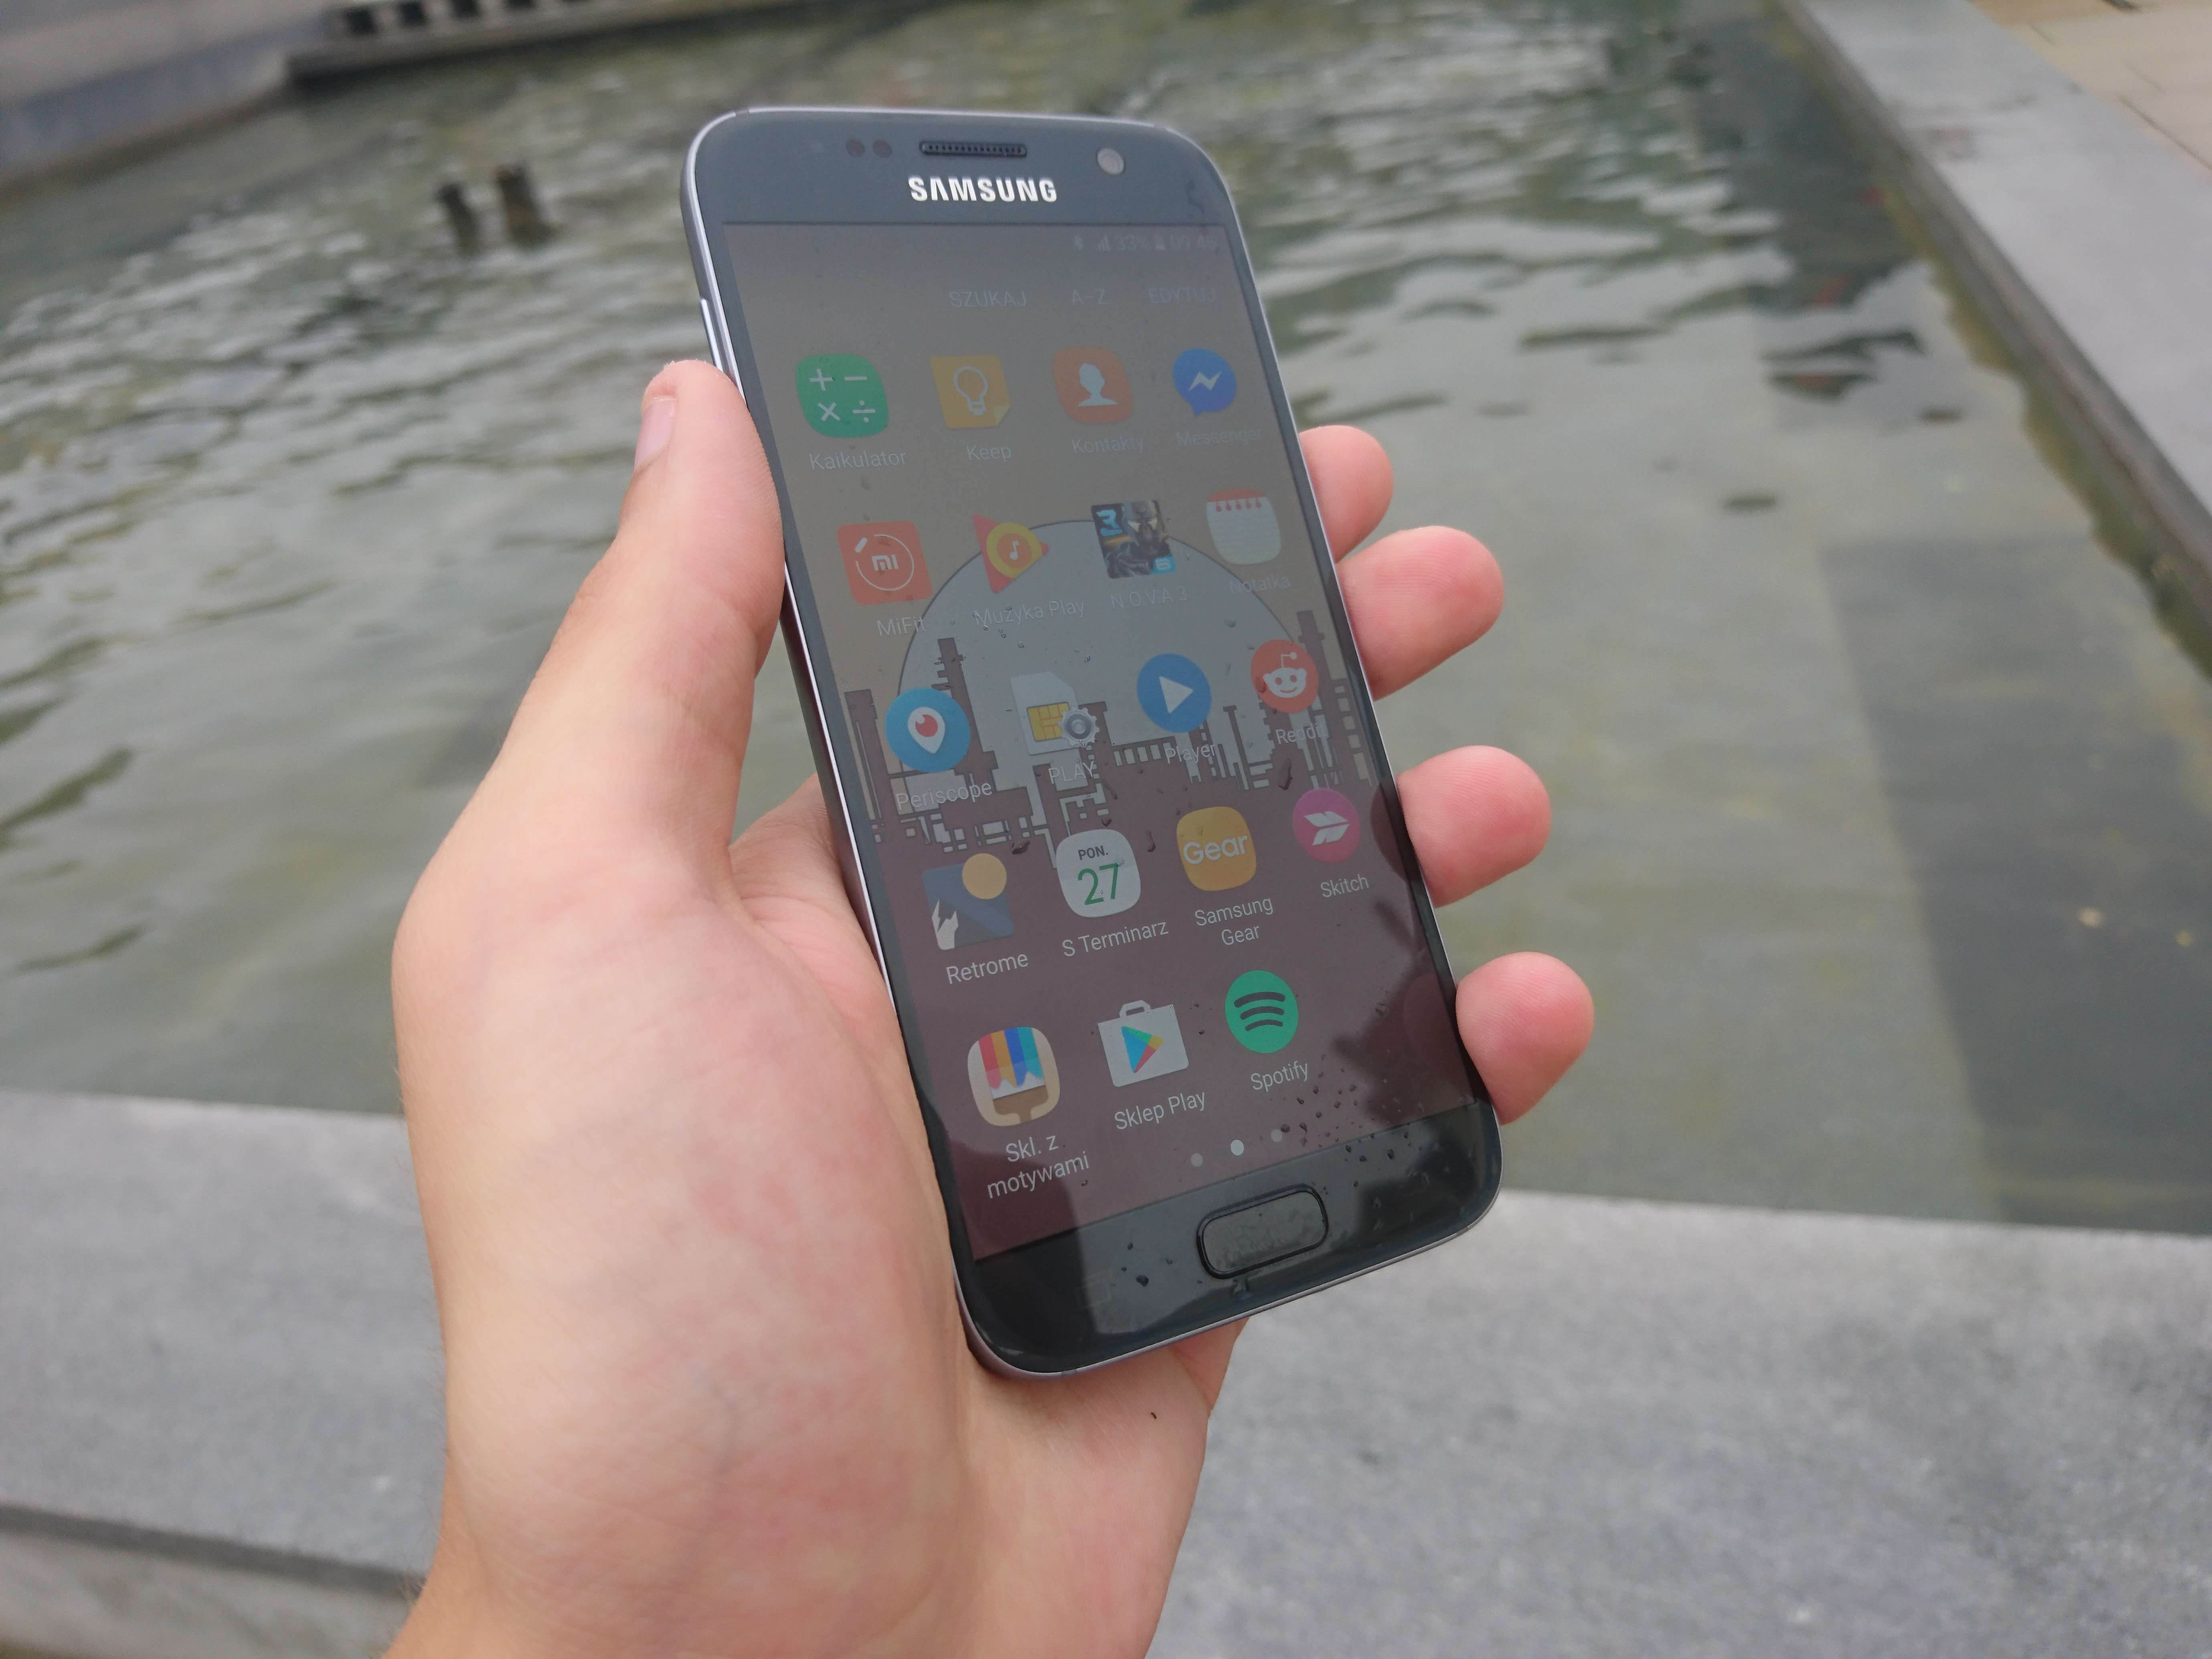 Samsung Galaxy S7 - test i recenzja urządzenia recenzje, polecane zalety, Wideo, wady, test i recenzja Samsung Galaxy S7, Samsung Galaxy S7, recka, recenzja Samsung Galaxy S7, Recenzja, polska recenzja Samsung Galaxy S7, galaxy s7, cena, aparat  Pamiętam, jak oglądałem na żywo premierę Galaxy S7/S7 Edge i częściowo byłem zachwycony nowym produktem lidera rynku mobilnego, ale najbardziej zdenerwował mnie fakt, że nie poczyniono drastycznych zmian we wzornictwie urządzenia. DSC 0013